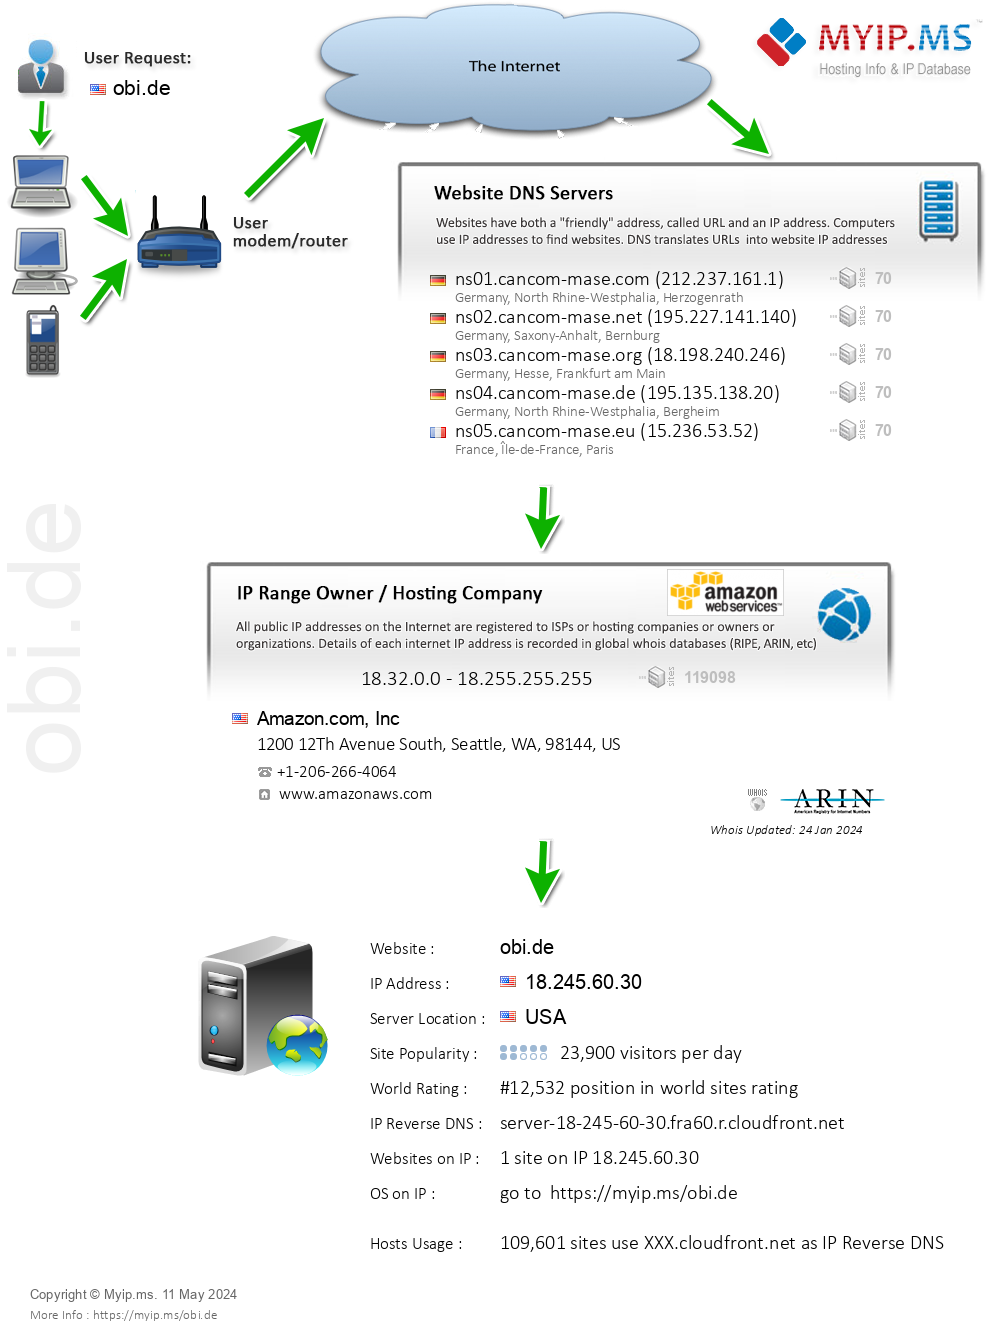 Obi.de - Website Hosting Visual IP Diagram